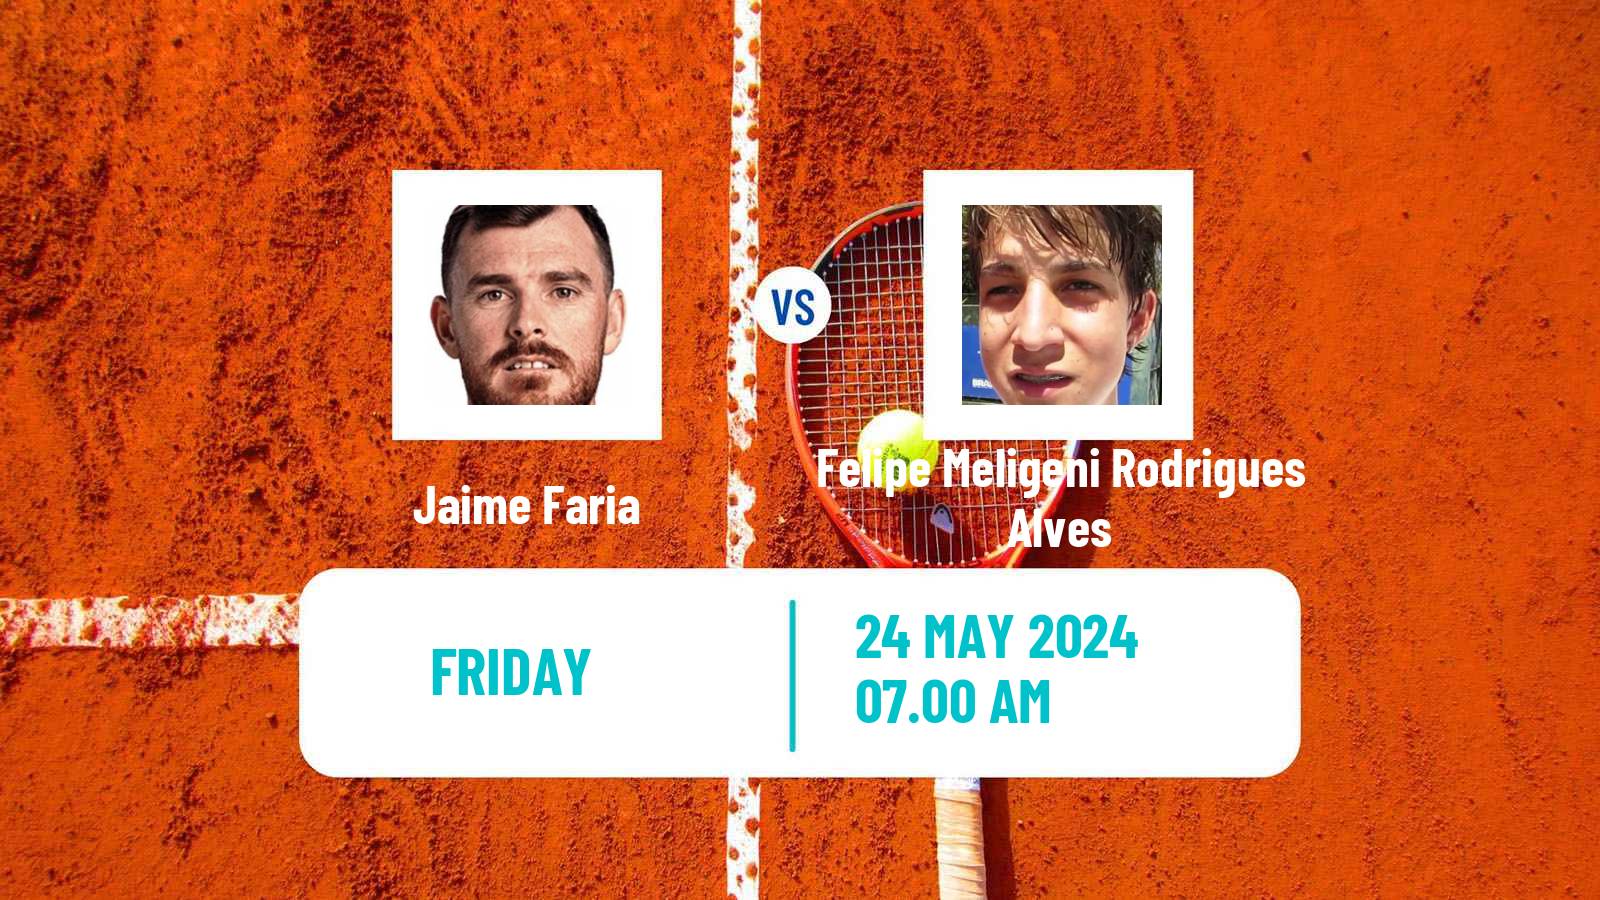 Tennis ATP Roland Garros Jaime Faria - Felipe Meligeni Rodrigues Alves